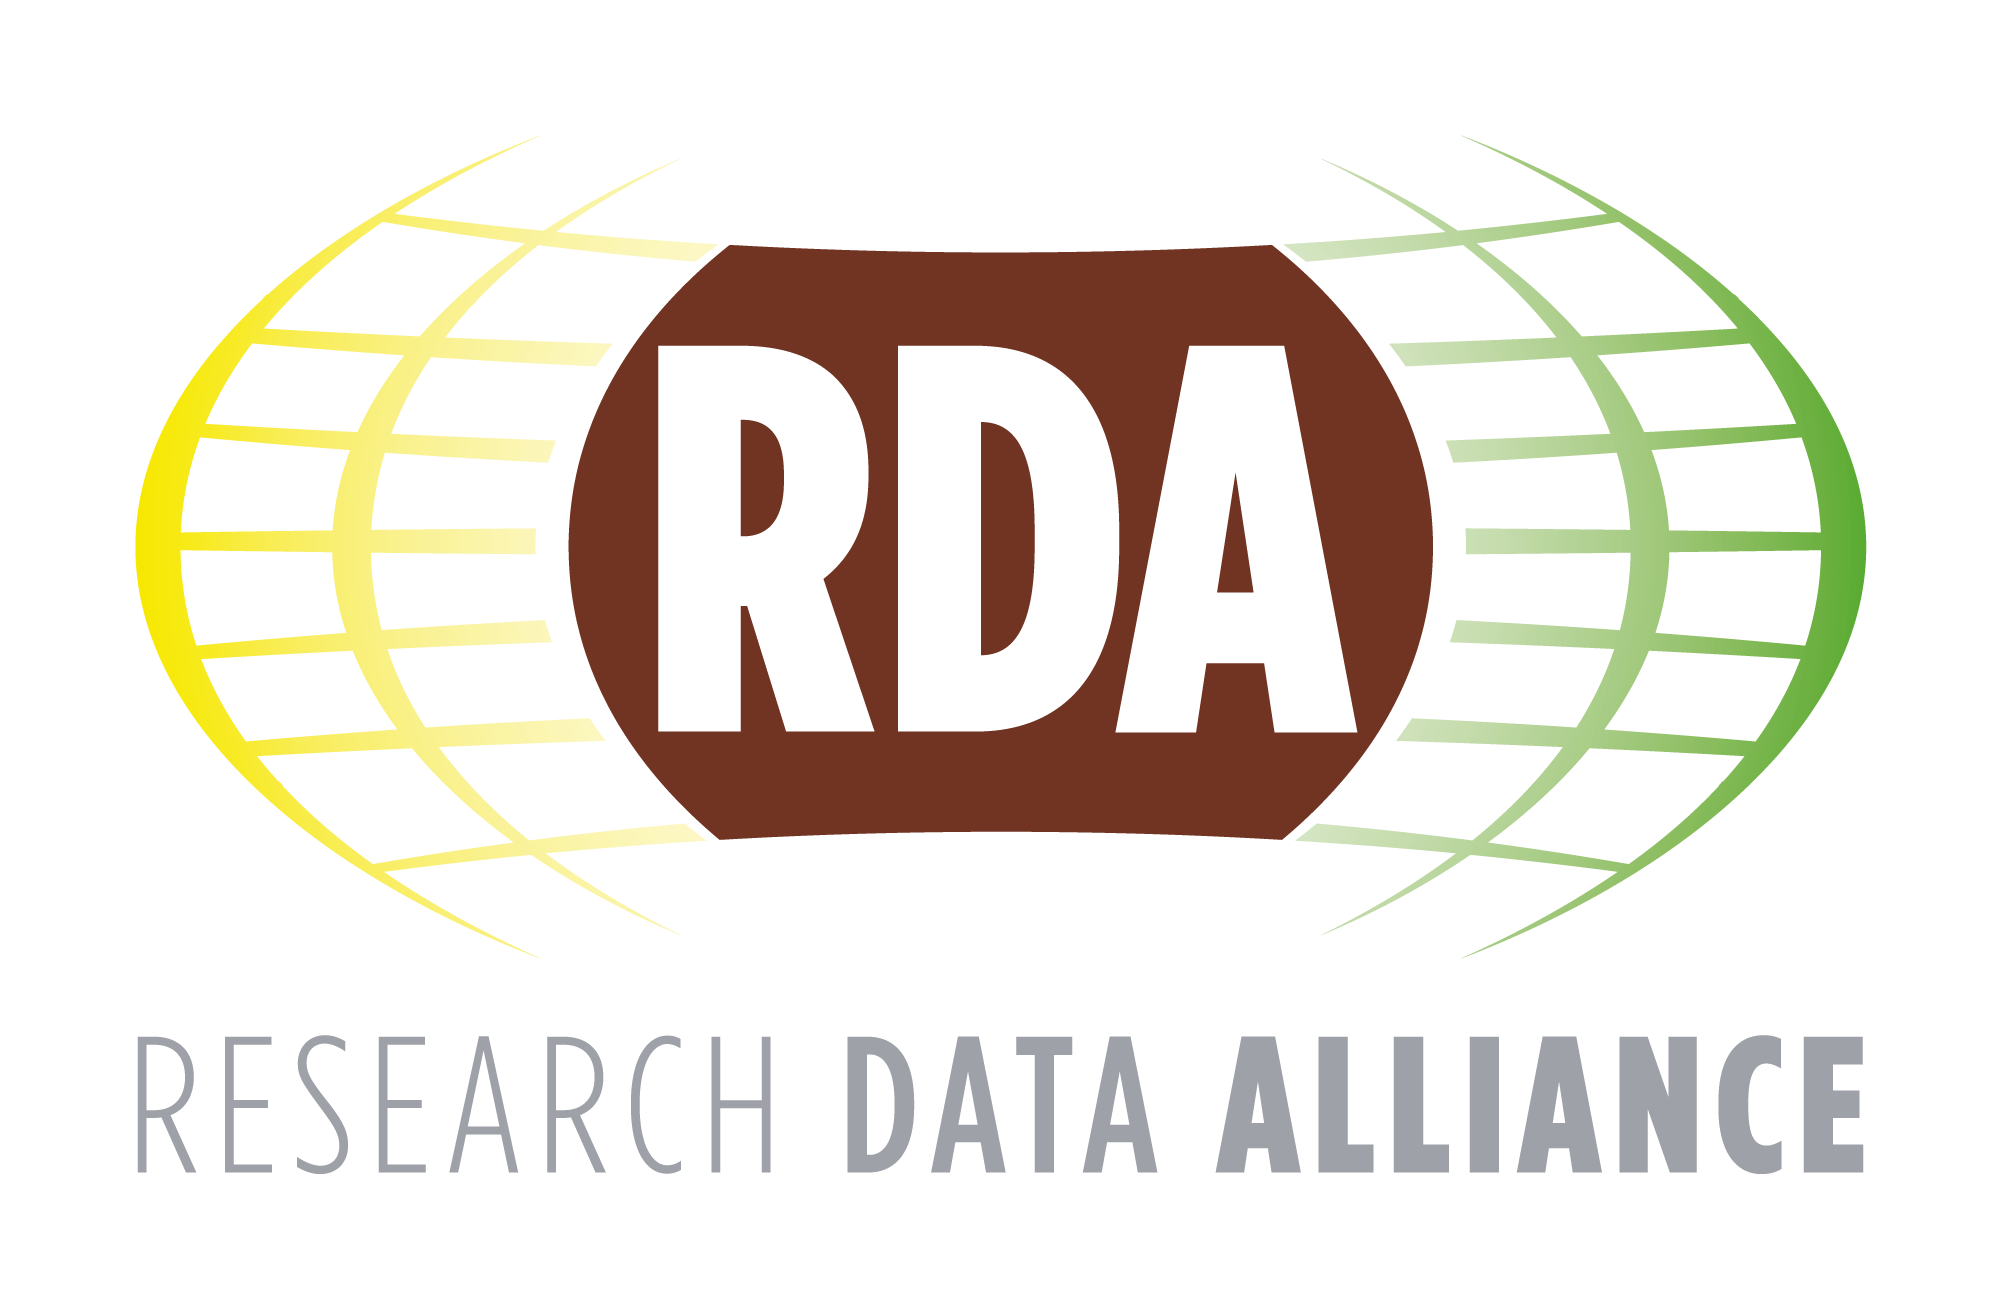 RDA logo